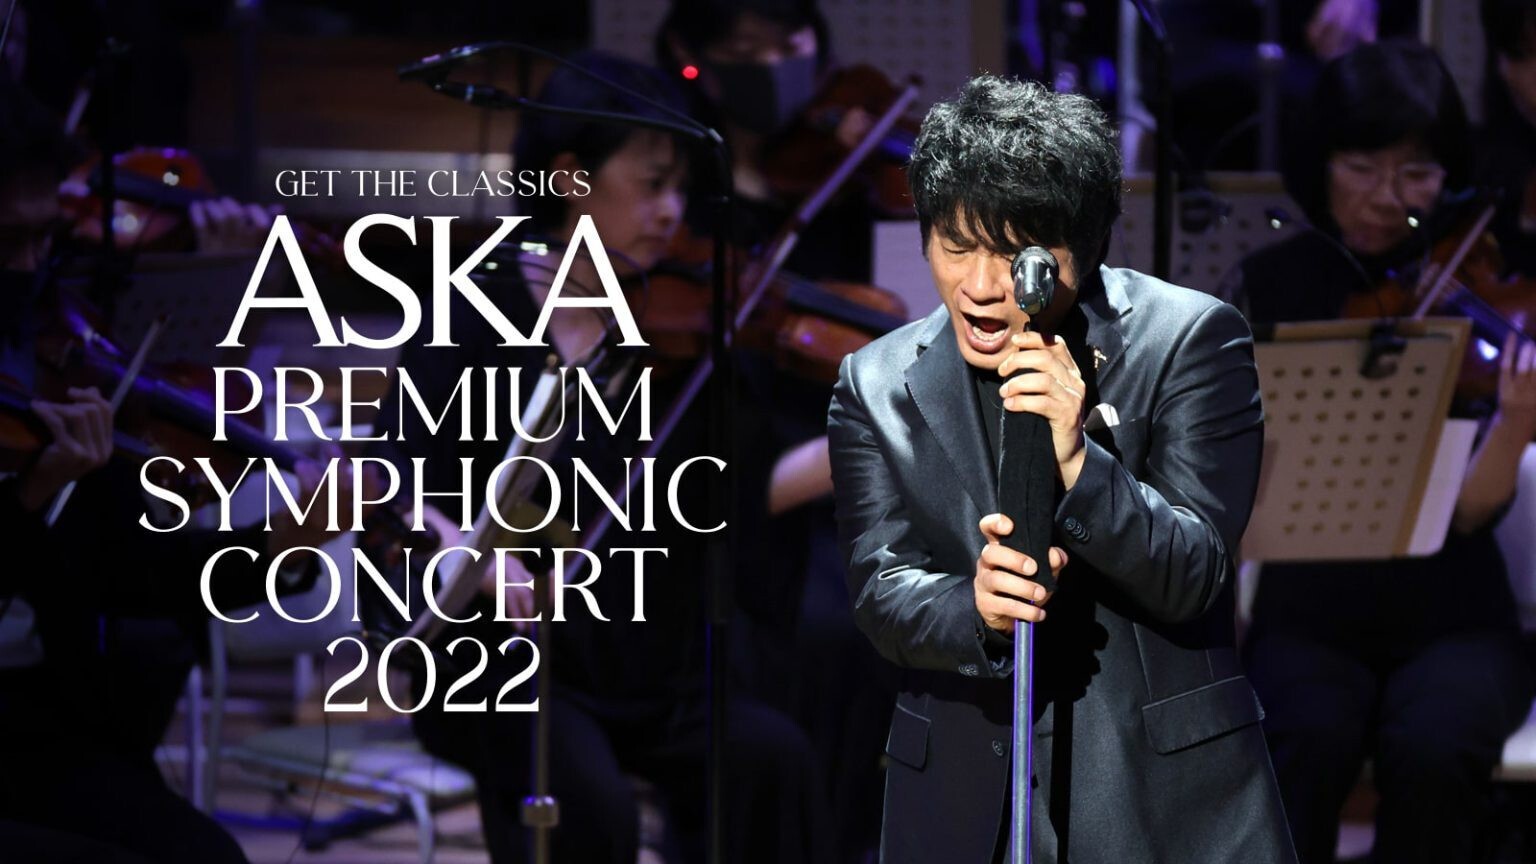 ASKA Premium Symphonic Concert 2022 / 08.25 (Thu) @ Online